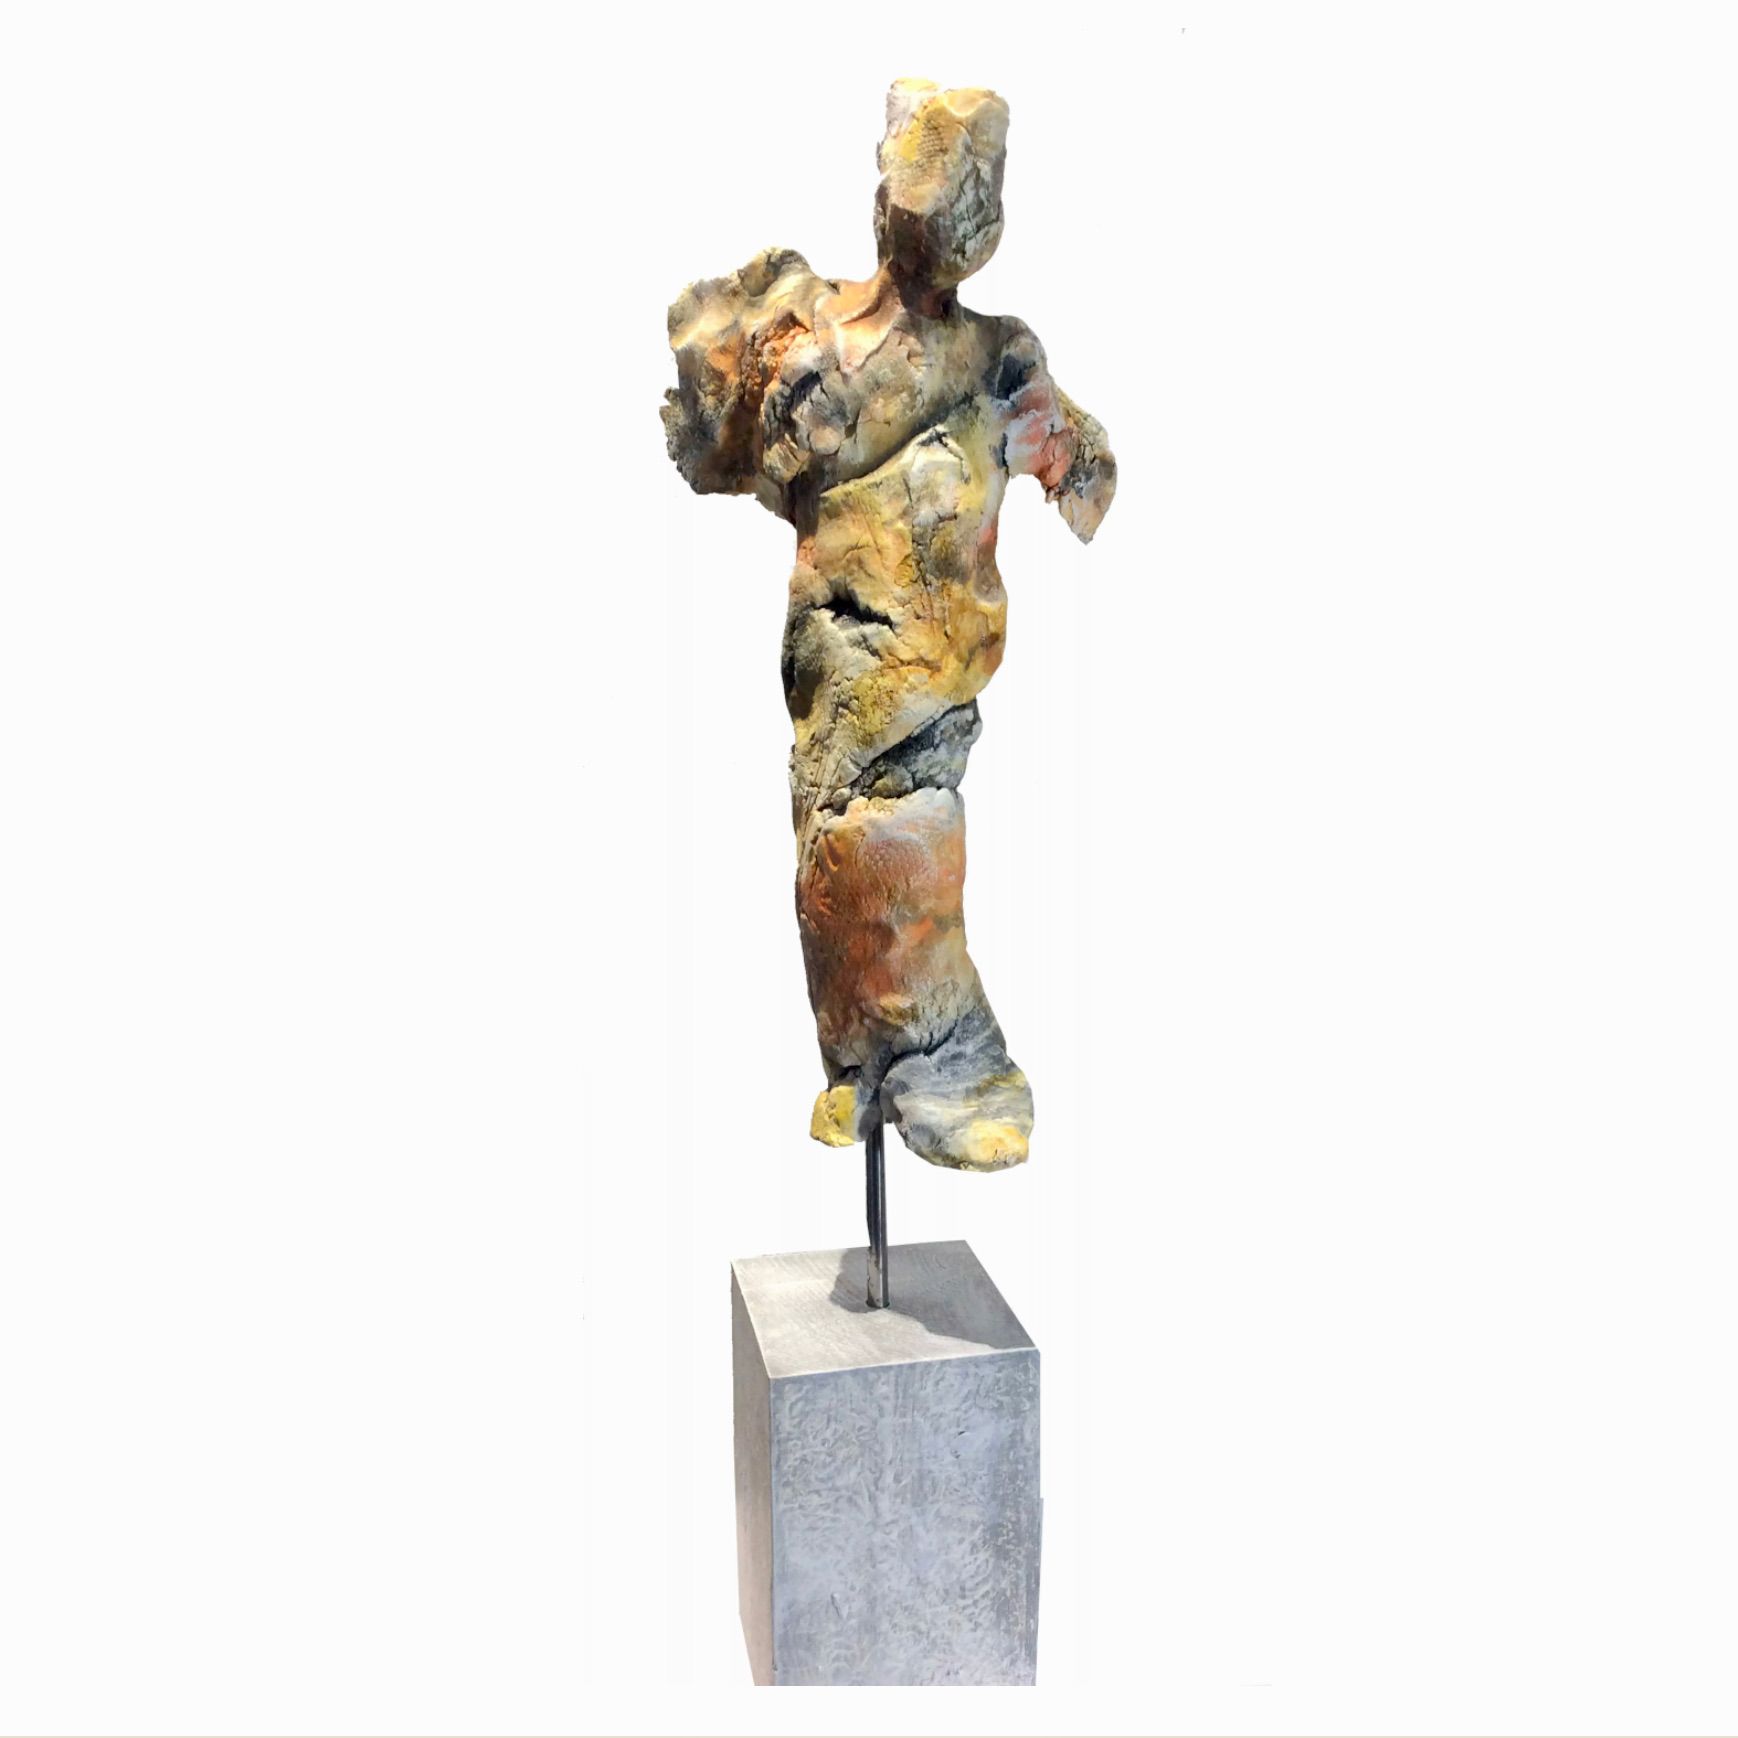 伊洛娜-施密特的 "FIGURINE NR. XII "展示了一个用粘土制成的模型身体的雕塑，经过烧制，带有木质支架和冷色的铜锈。